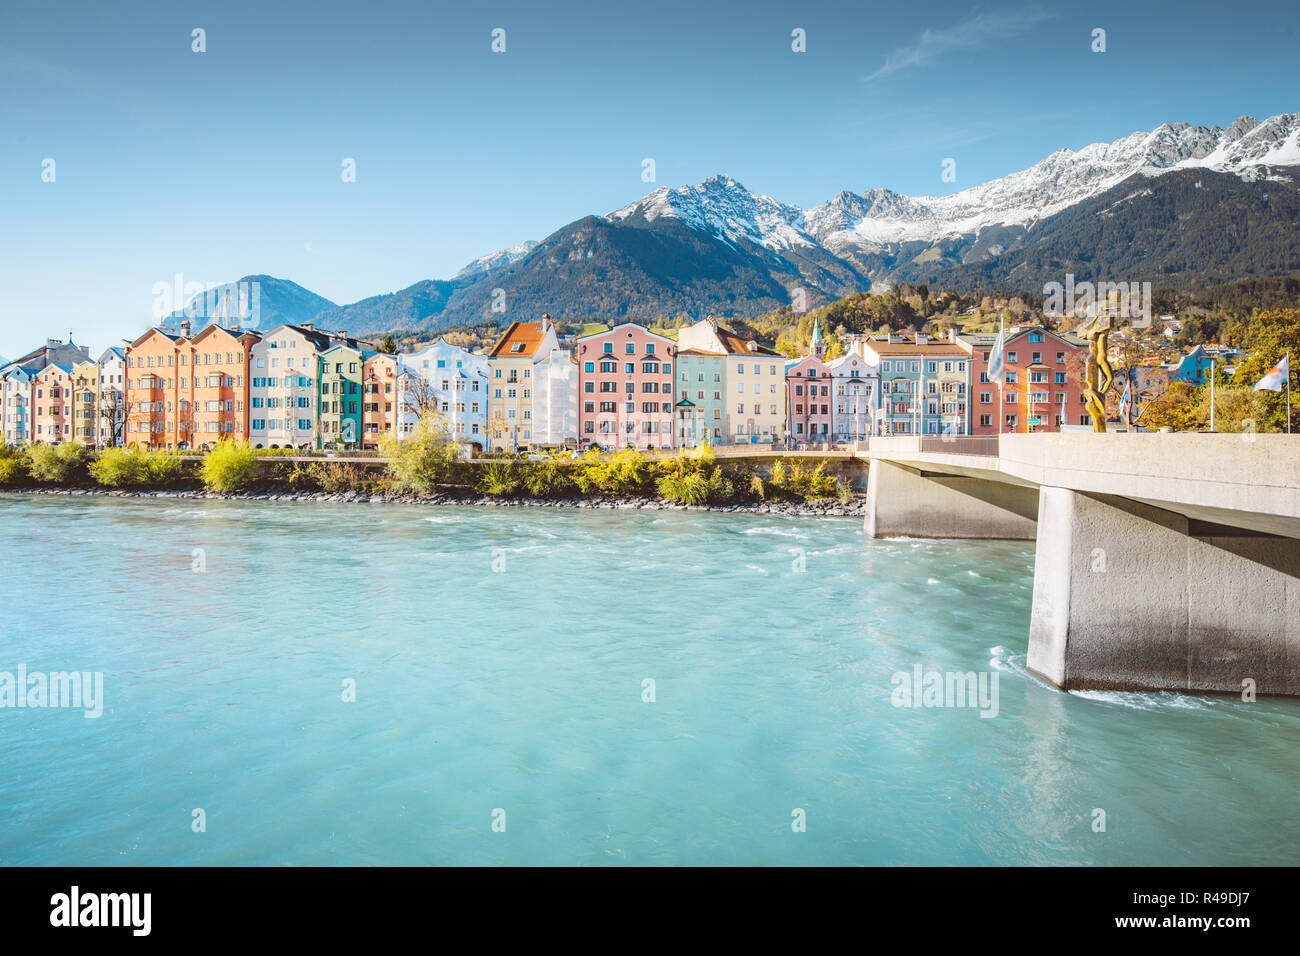 Centro storico di Innsbruck con case colorate lungo il fiume Inn e famosa montagna austriaca i vertici in background, Tirolo, Austria Foto Stock